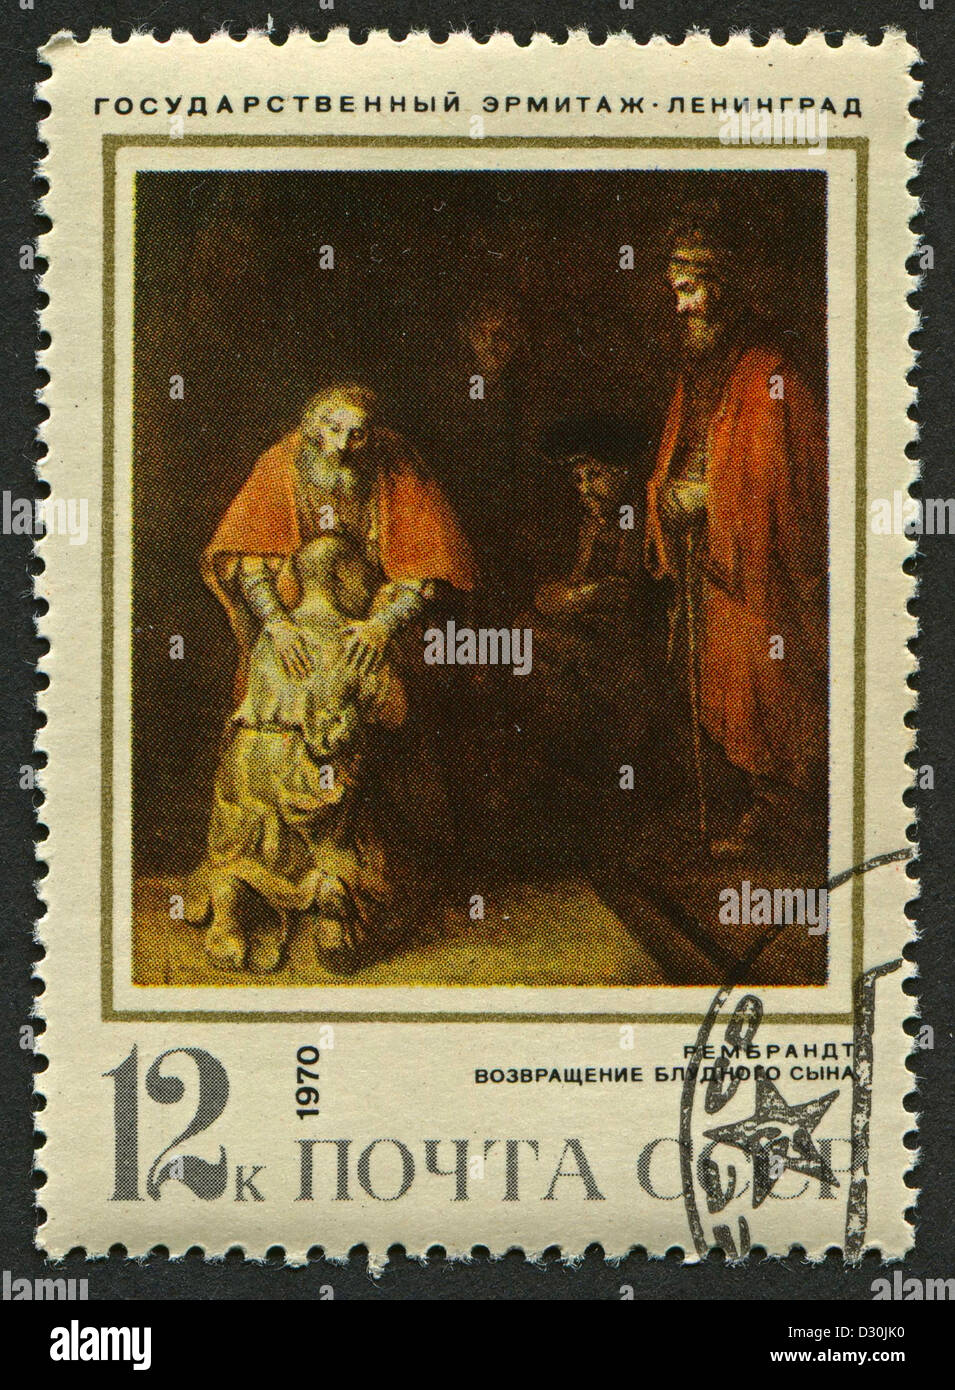 UdSSR - CIRCA 1970: Eine Briefmarke gedruckt in der UdSSR zeigt ein Öl-Gemälde "The Return of the Prodigal Son" von Rembrandt, ca. 1970. Stockfoto